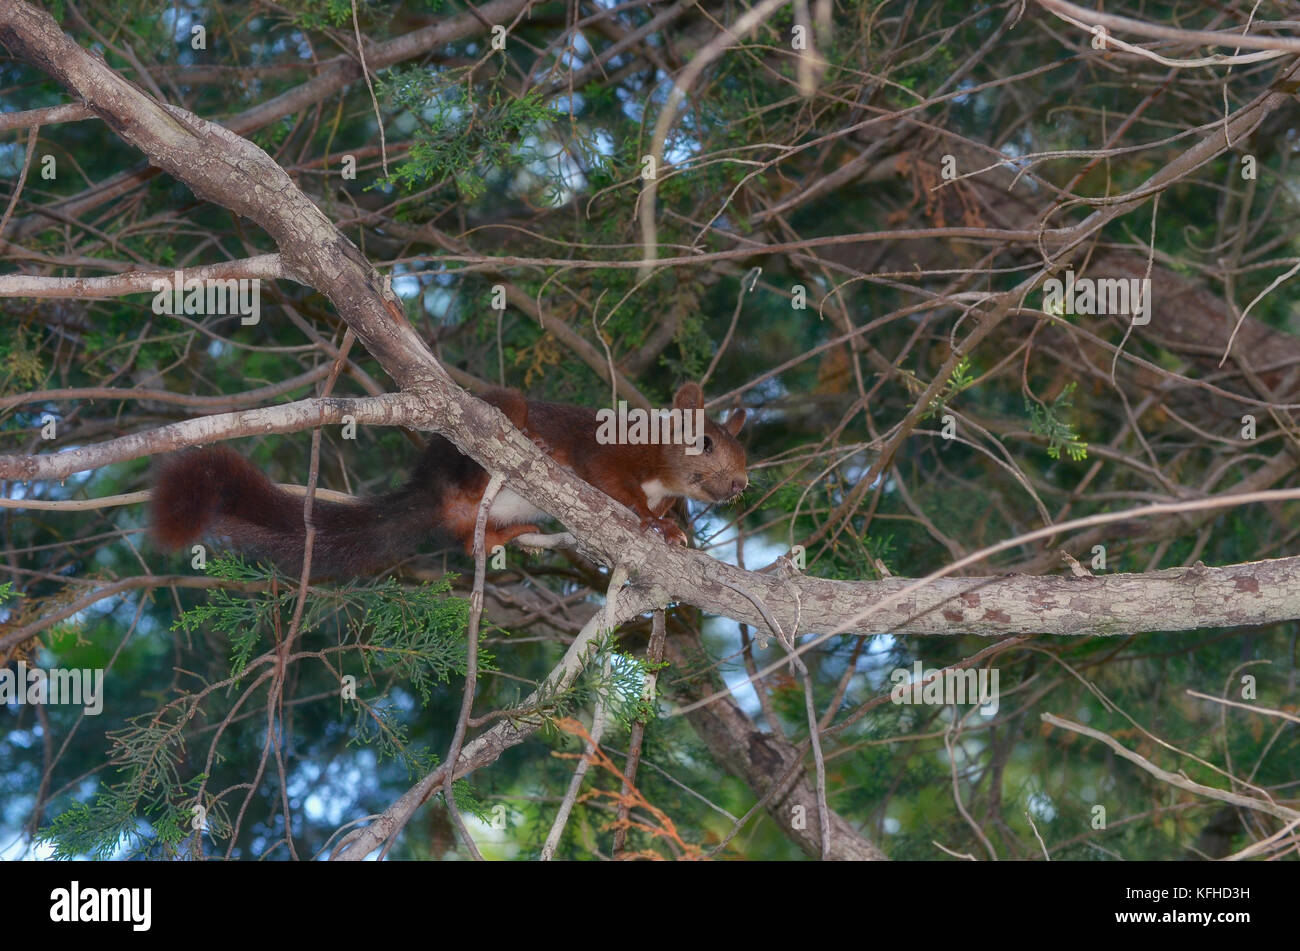 Écureuil roux sur la branche d'un pin. Faune à l'intérieur de la forêt méditerranéenne, en Espagne. Lumière limitée en raison de l'ombre des feuilles. Doux Banque D'Images